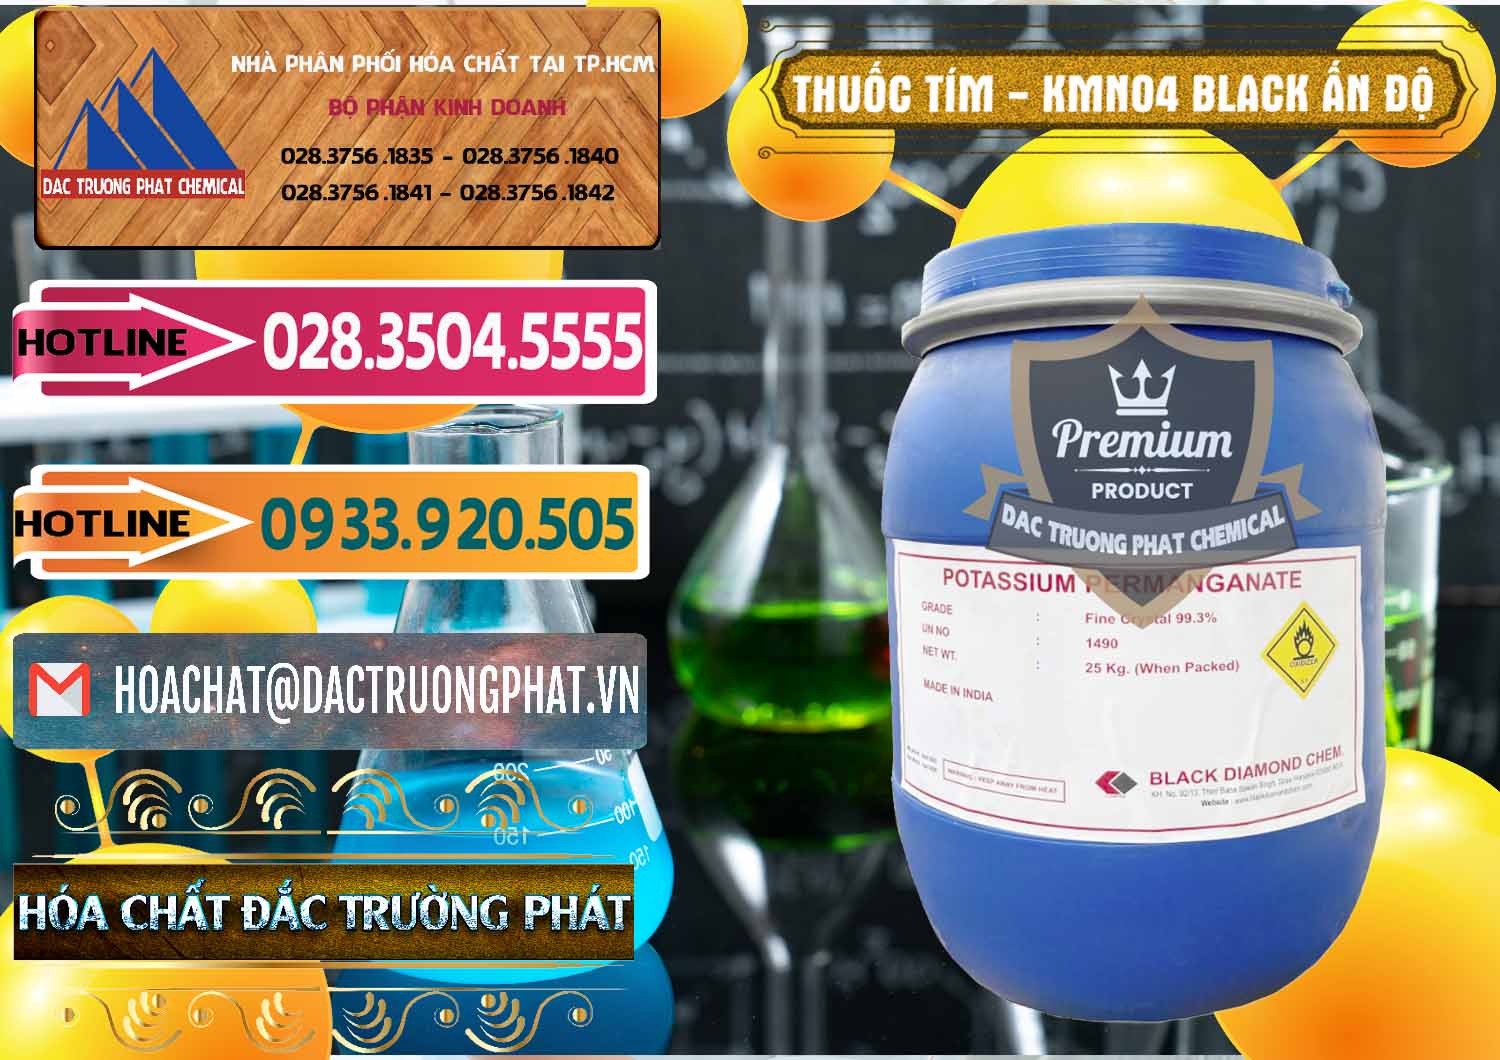 Đơn vị chuyên phân phối _ bán Thuốc Tím - KMNO4 Black Diamond Ấn Độ India - 0414 - Nơi chuyên kinh doanh _ cung cấp hóa chất tại TP.HCM - dactruongphat.vn